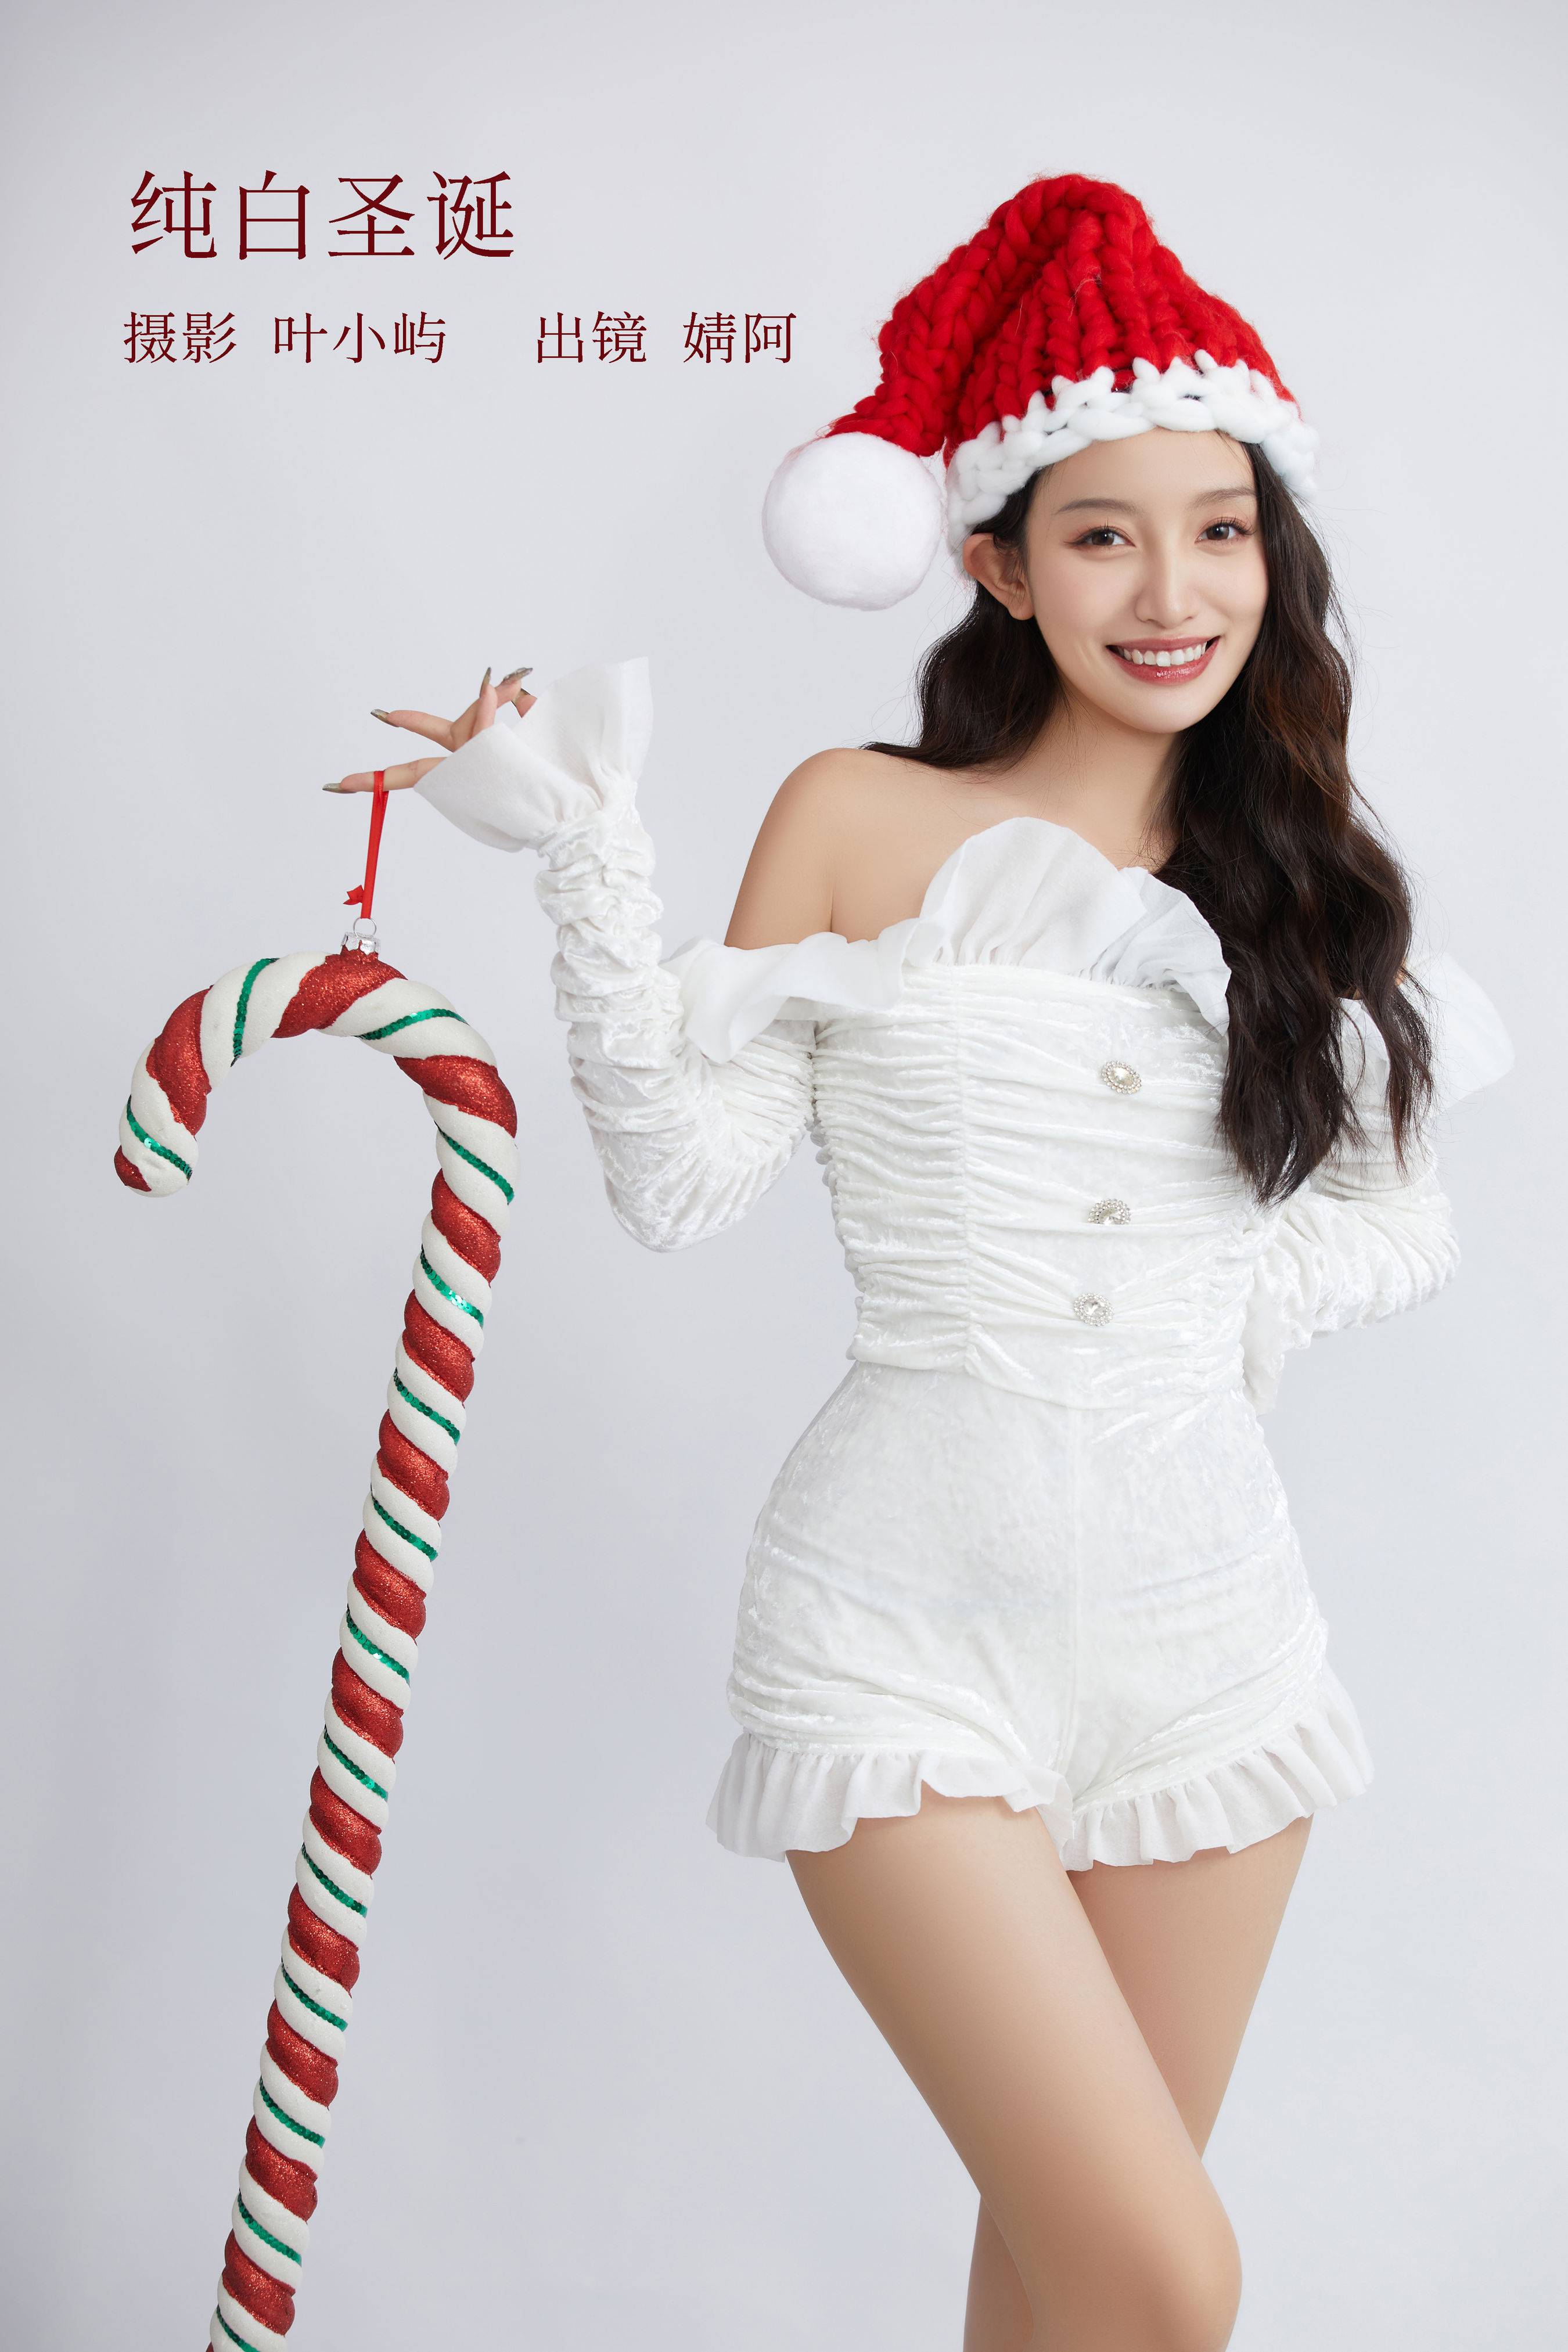 纯白圣诞 女郎 时尚人像 圣诞美女&YiTuYu艺图语-1